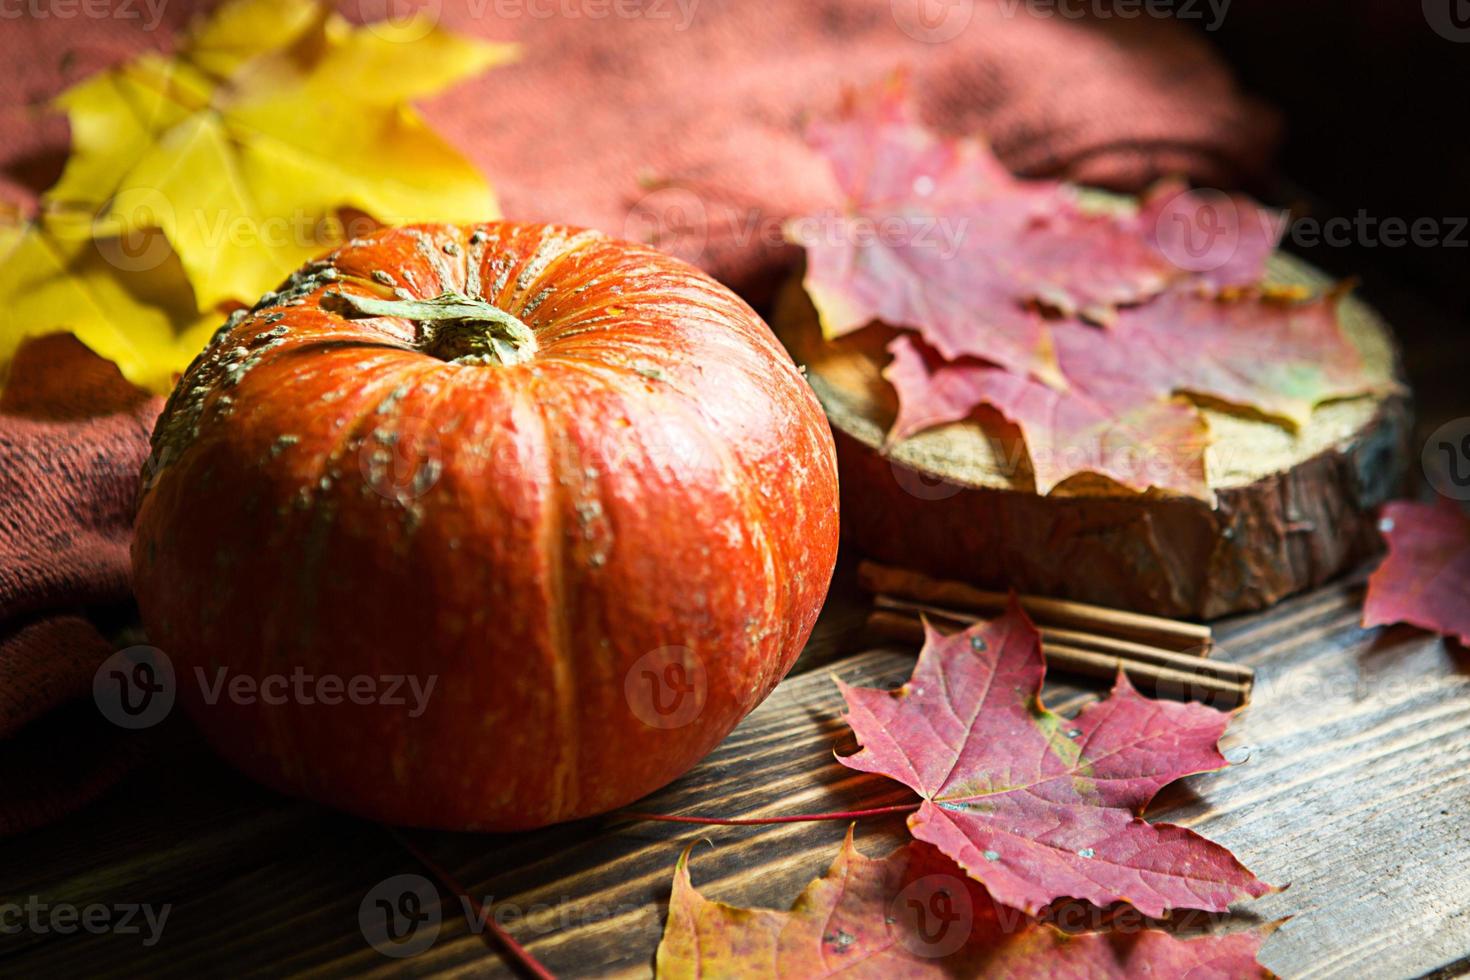 oranje natuurlijke ronde pompoen op een houten tafel met gevallen gele en rode esdoornbladeren, kaneelstokjes. lichtslingers, warme herfstsfeer, thanksgiving, oogstfeest, halloween. kopieer ruimte foto